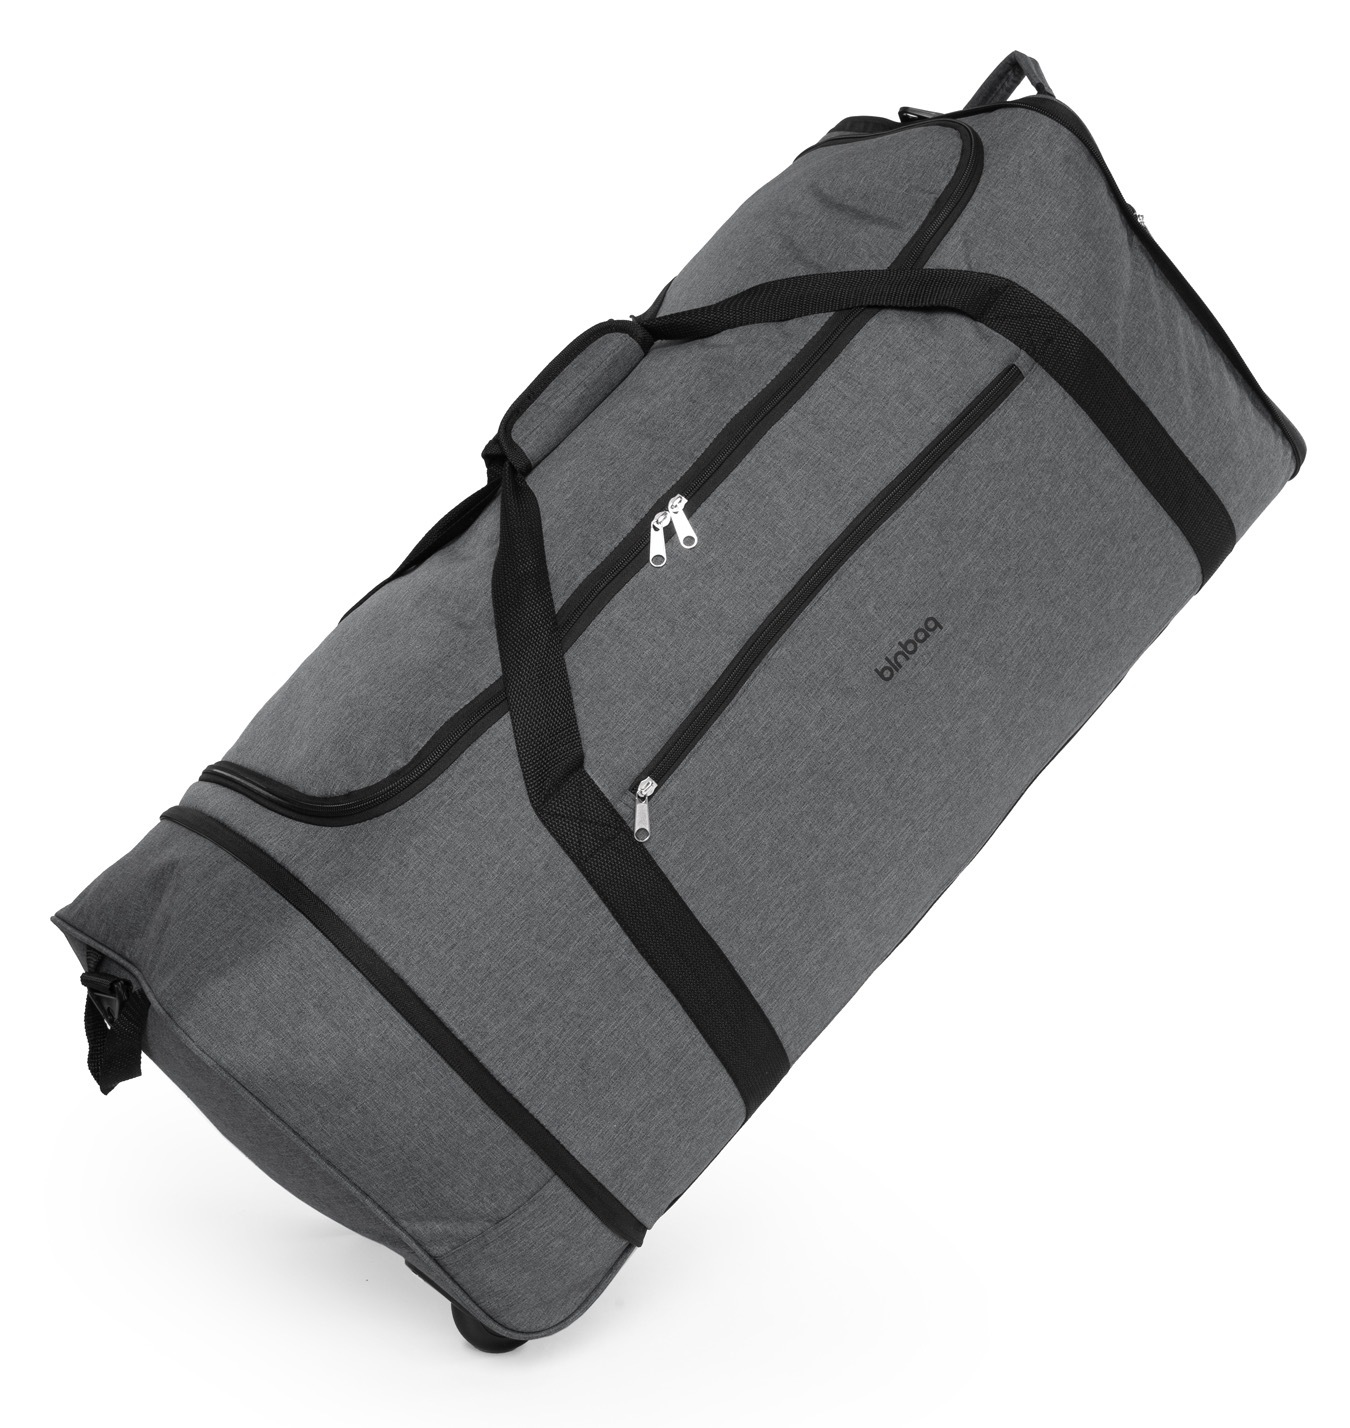 Hauptstadtkoffer Weichgepäck-Trolley »Blnbag M4«, 2 Rollen, Reisetasche Duffle Bag Reisegepäck Aufgabegepäck